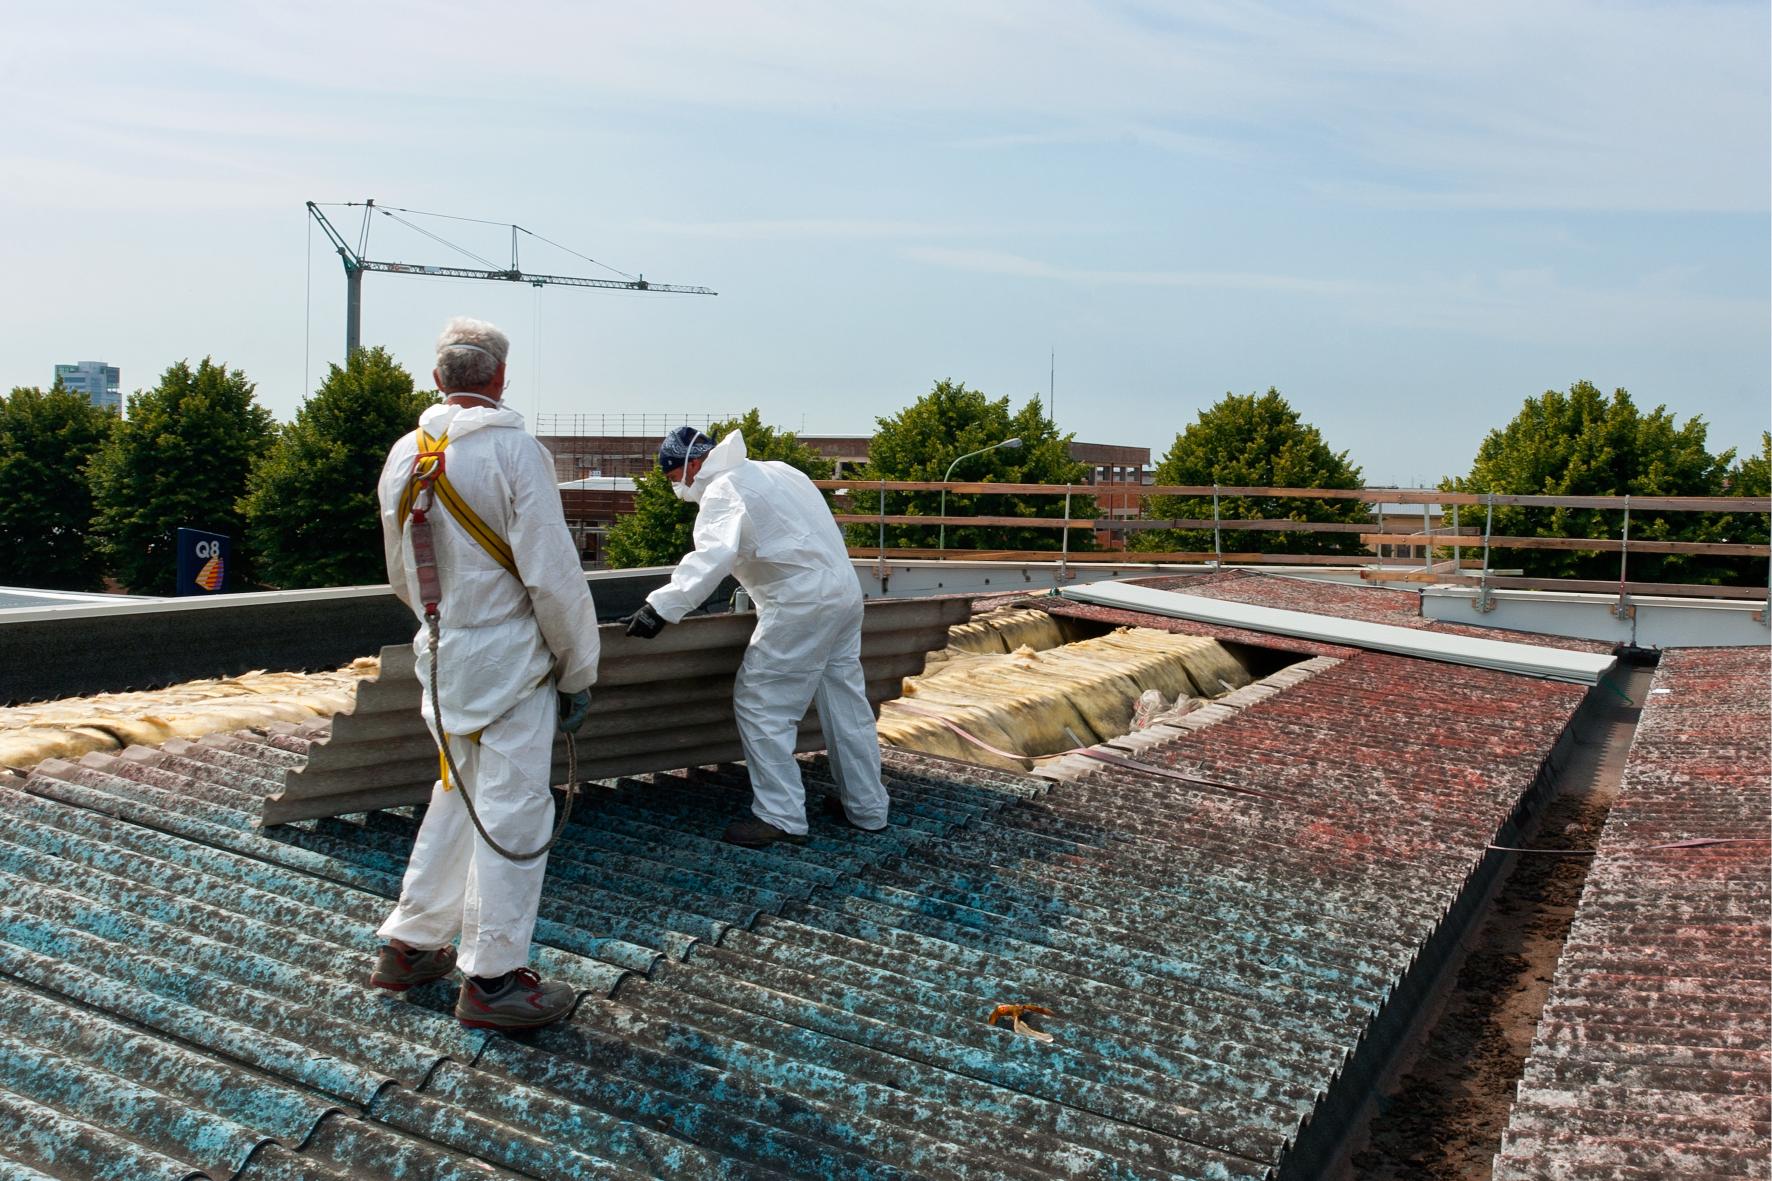 De gevaren van asbest en waarom verwijdering cruciaal is…